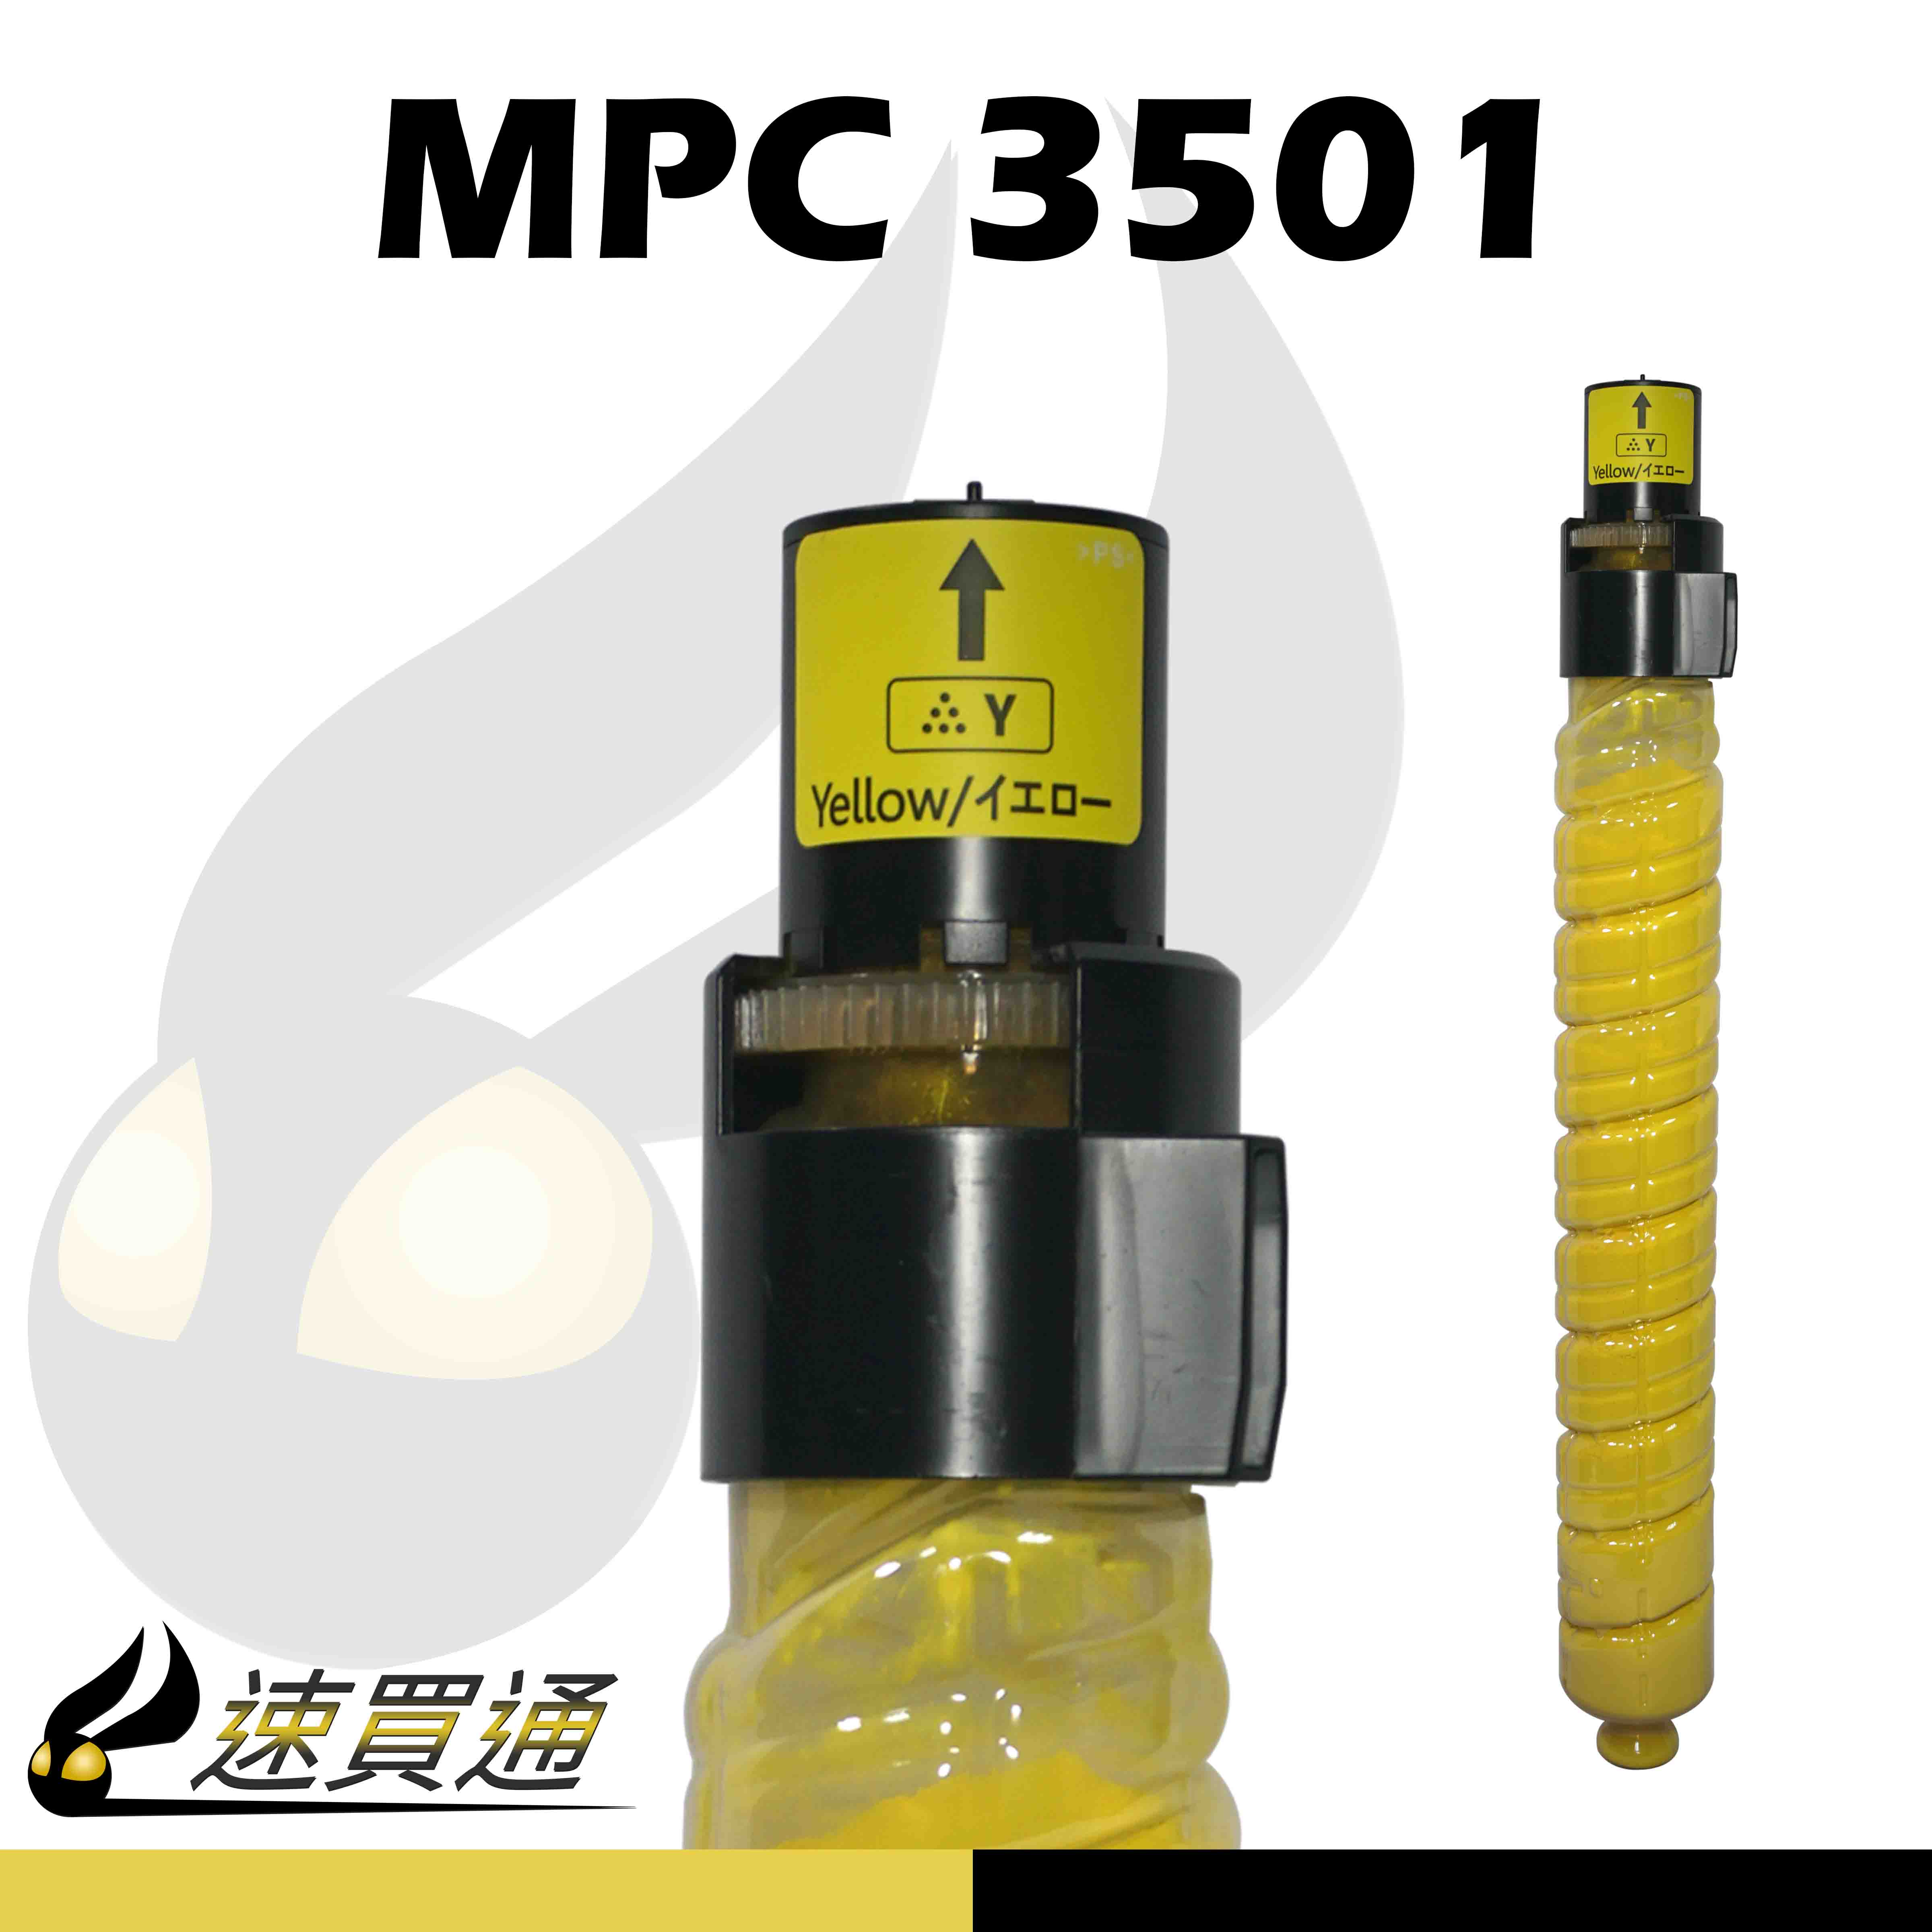 【速買通】RICOH MPC3501/MPC3001 黃 相容影印機碳粉匣